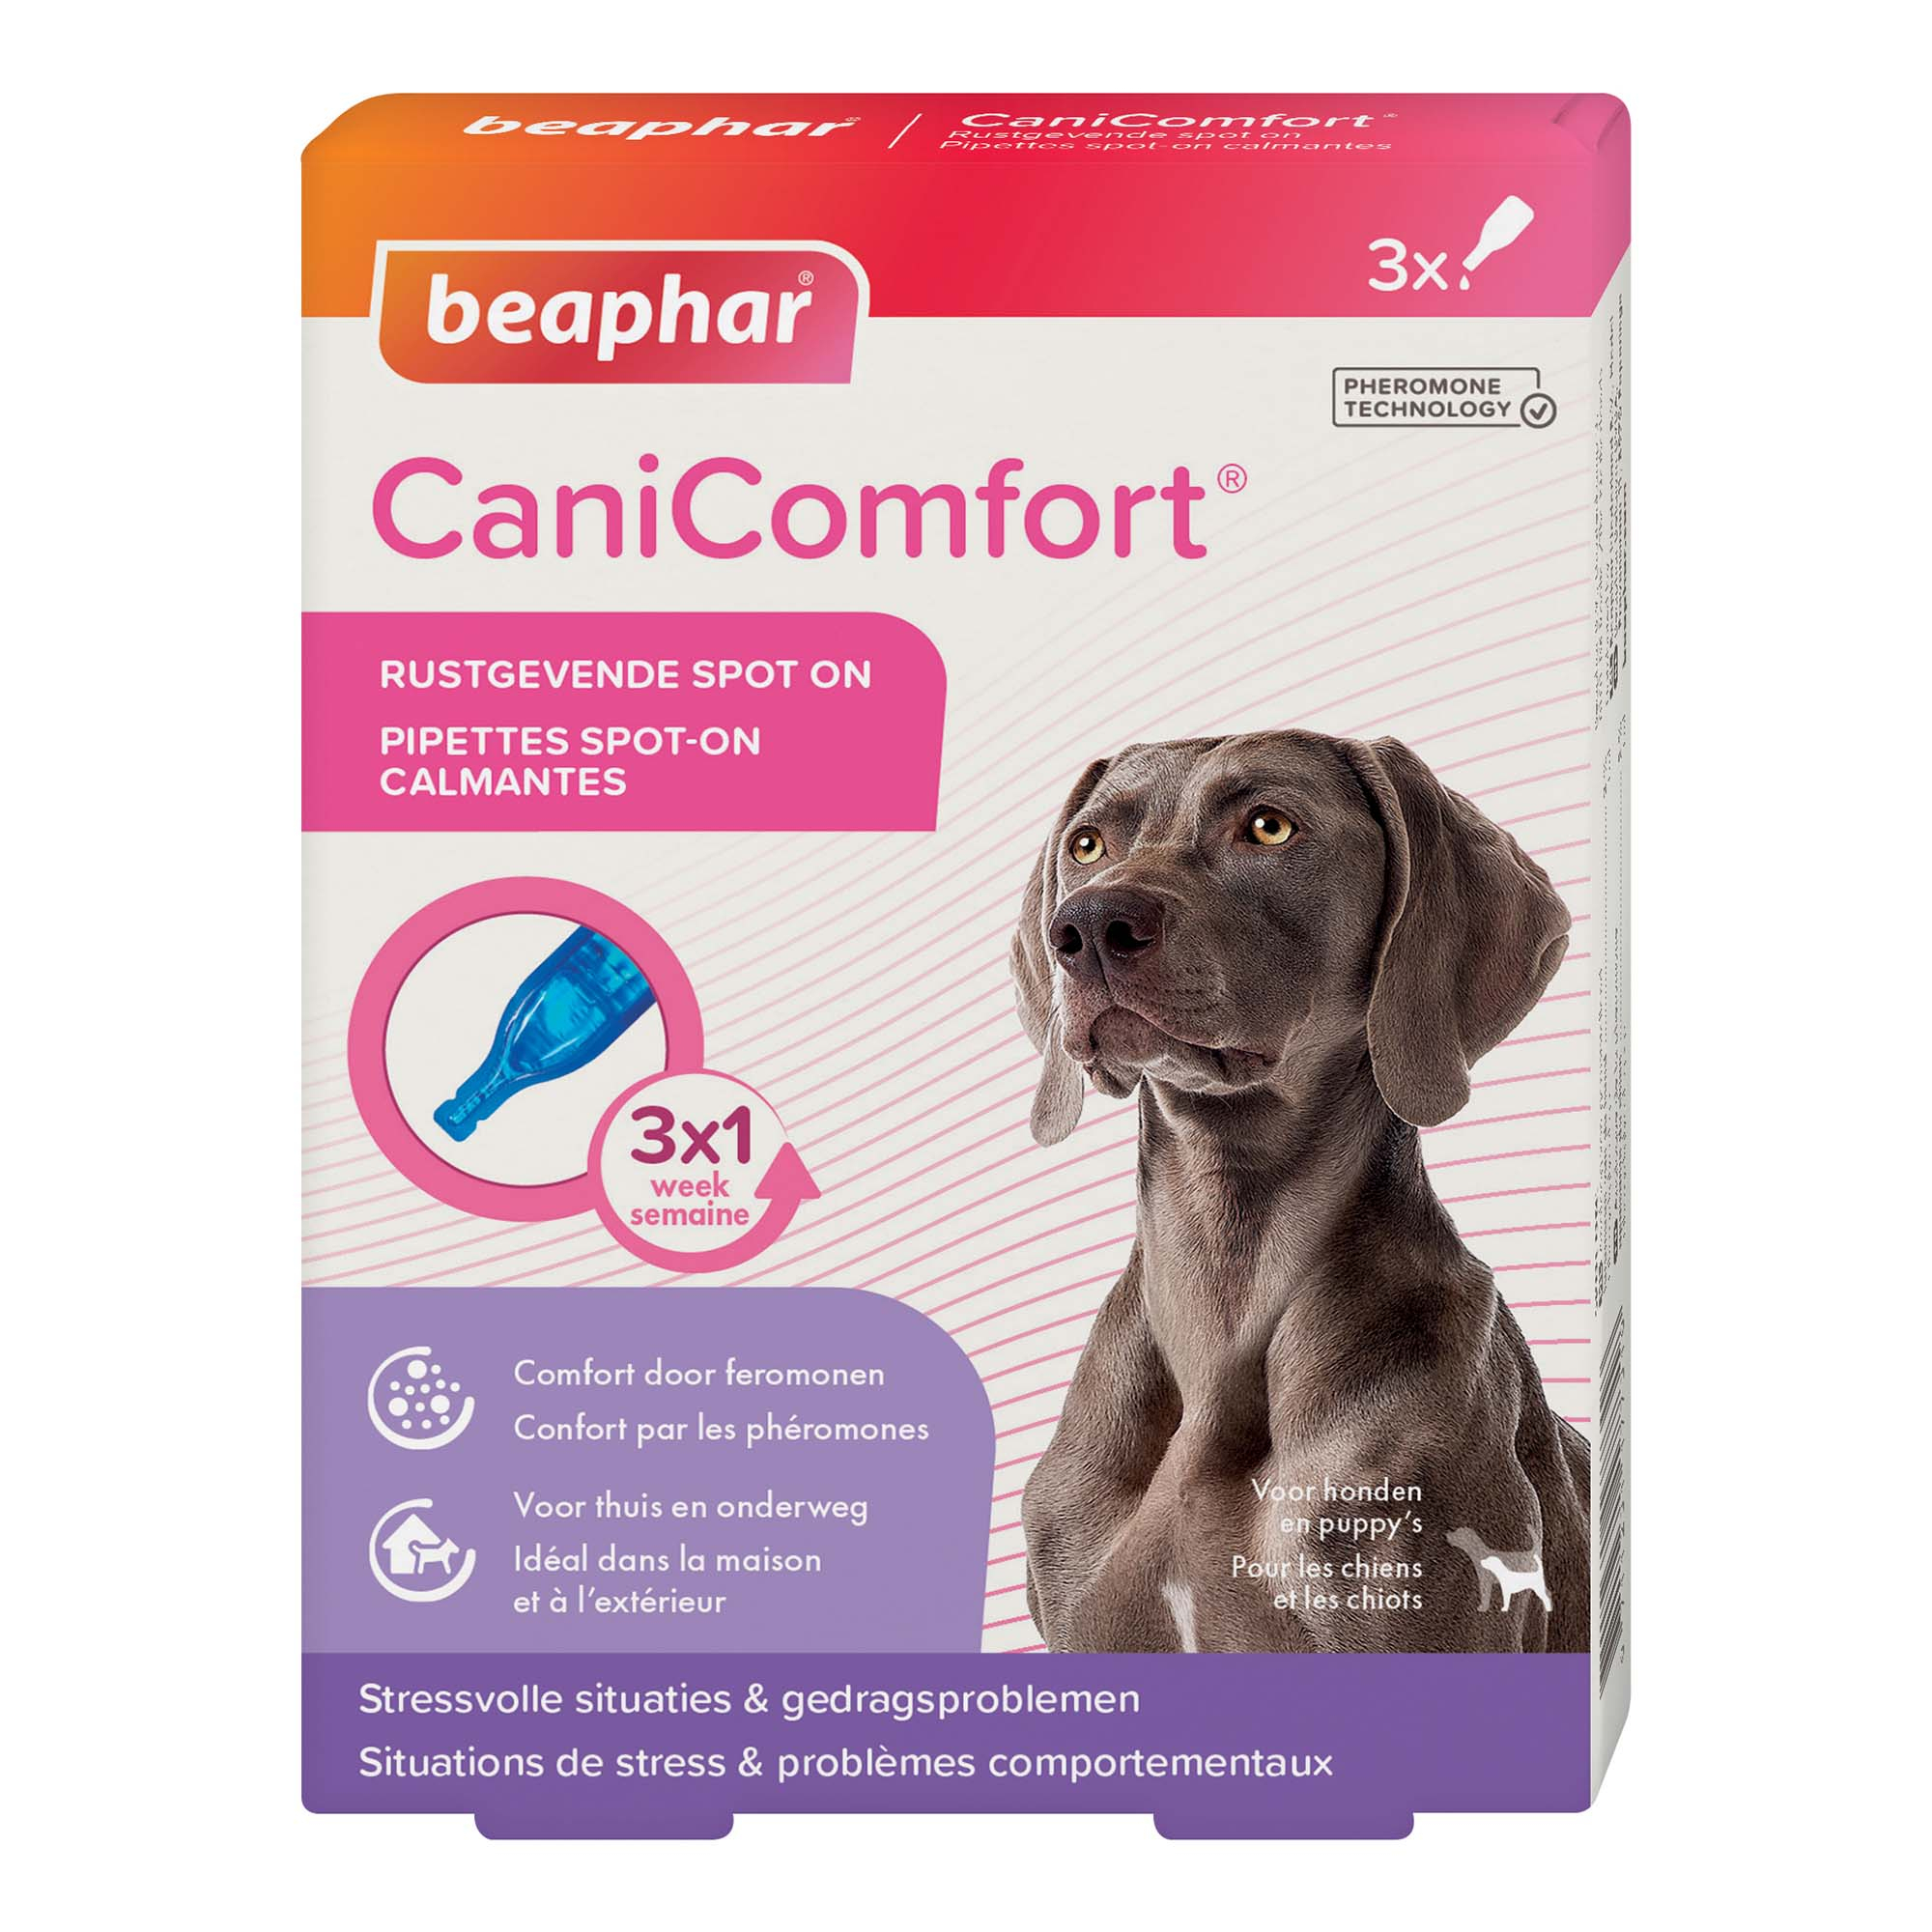 CaniComfort Pipetas calmantes de feromonas para perro y cachorro